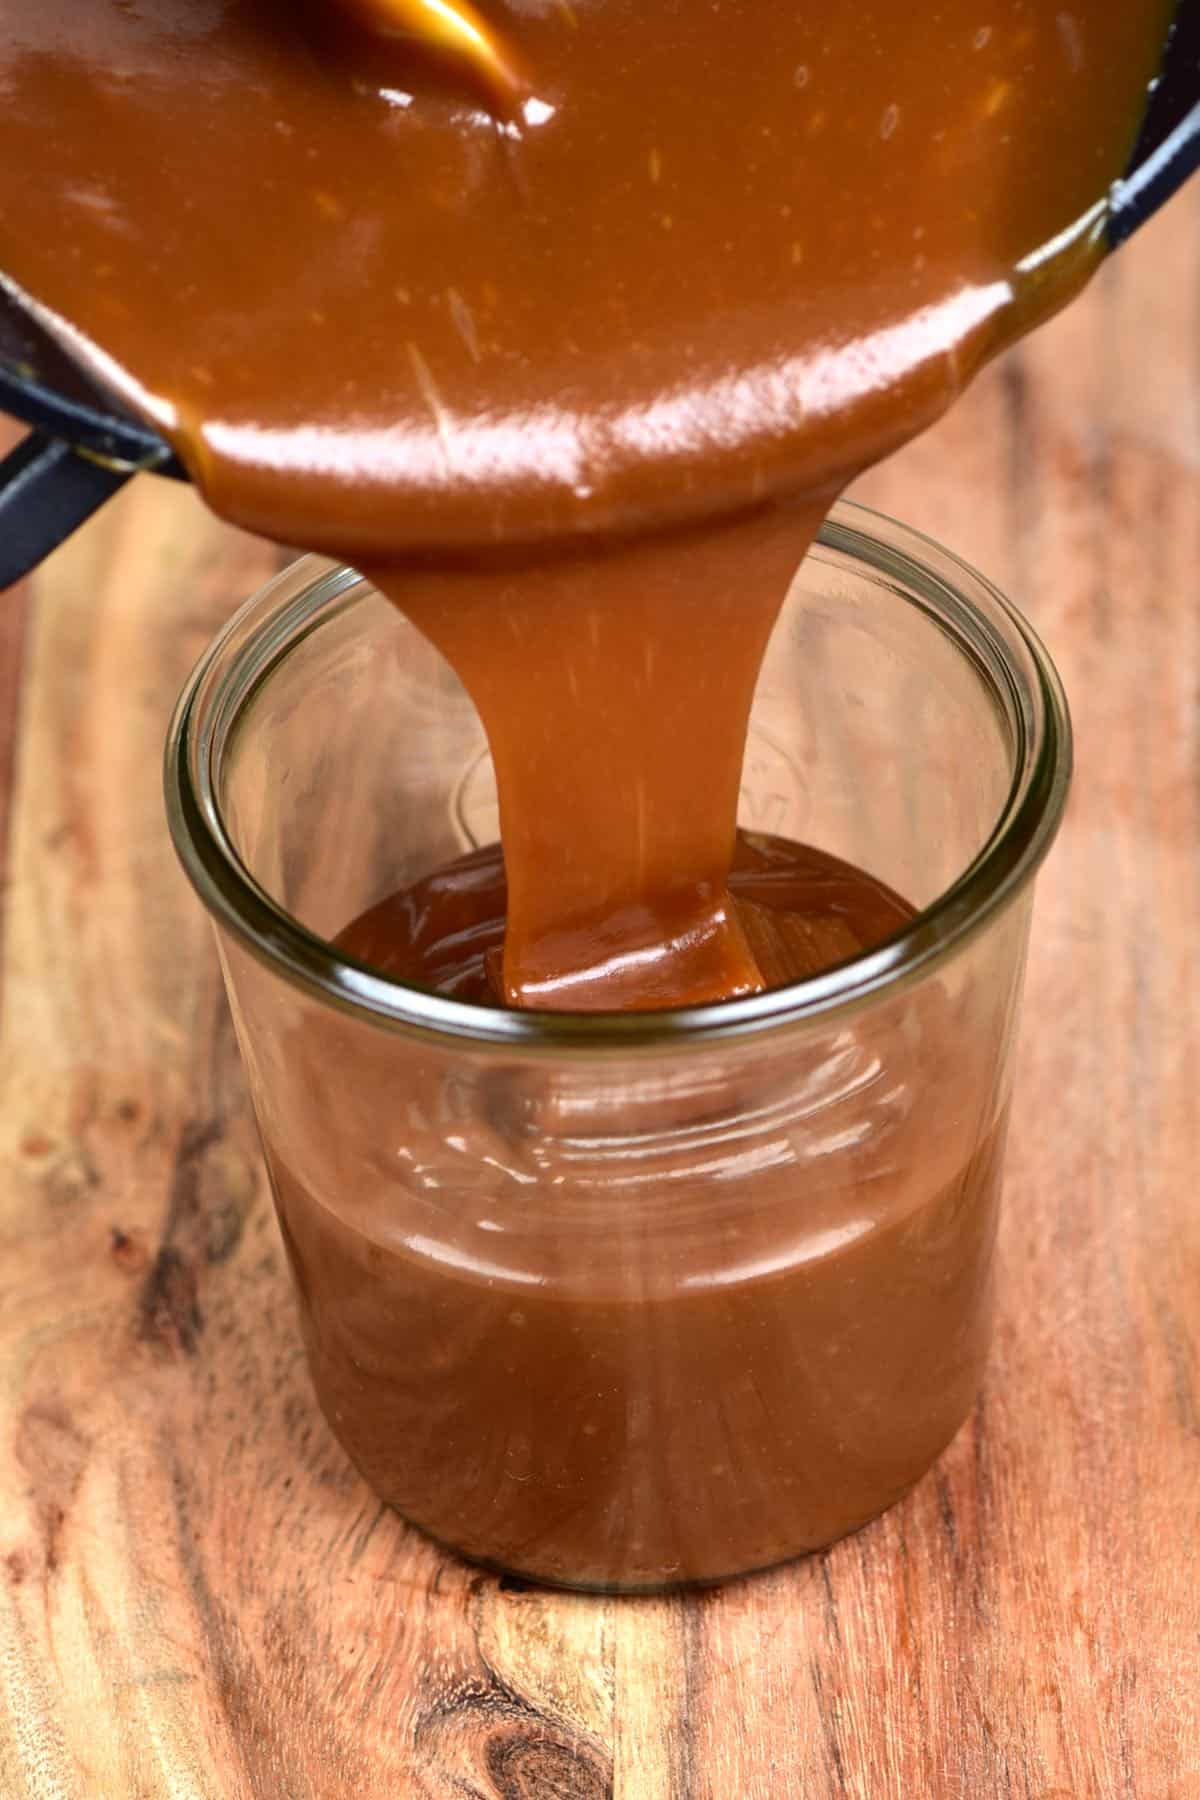 Pouring homemade caramel into a jar